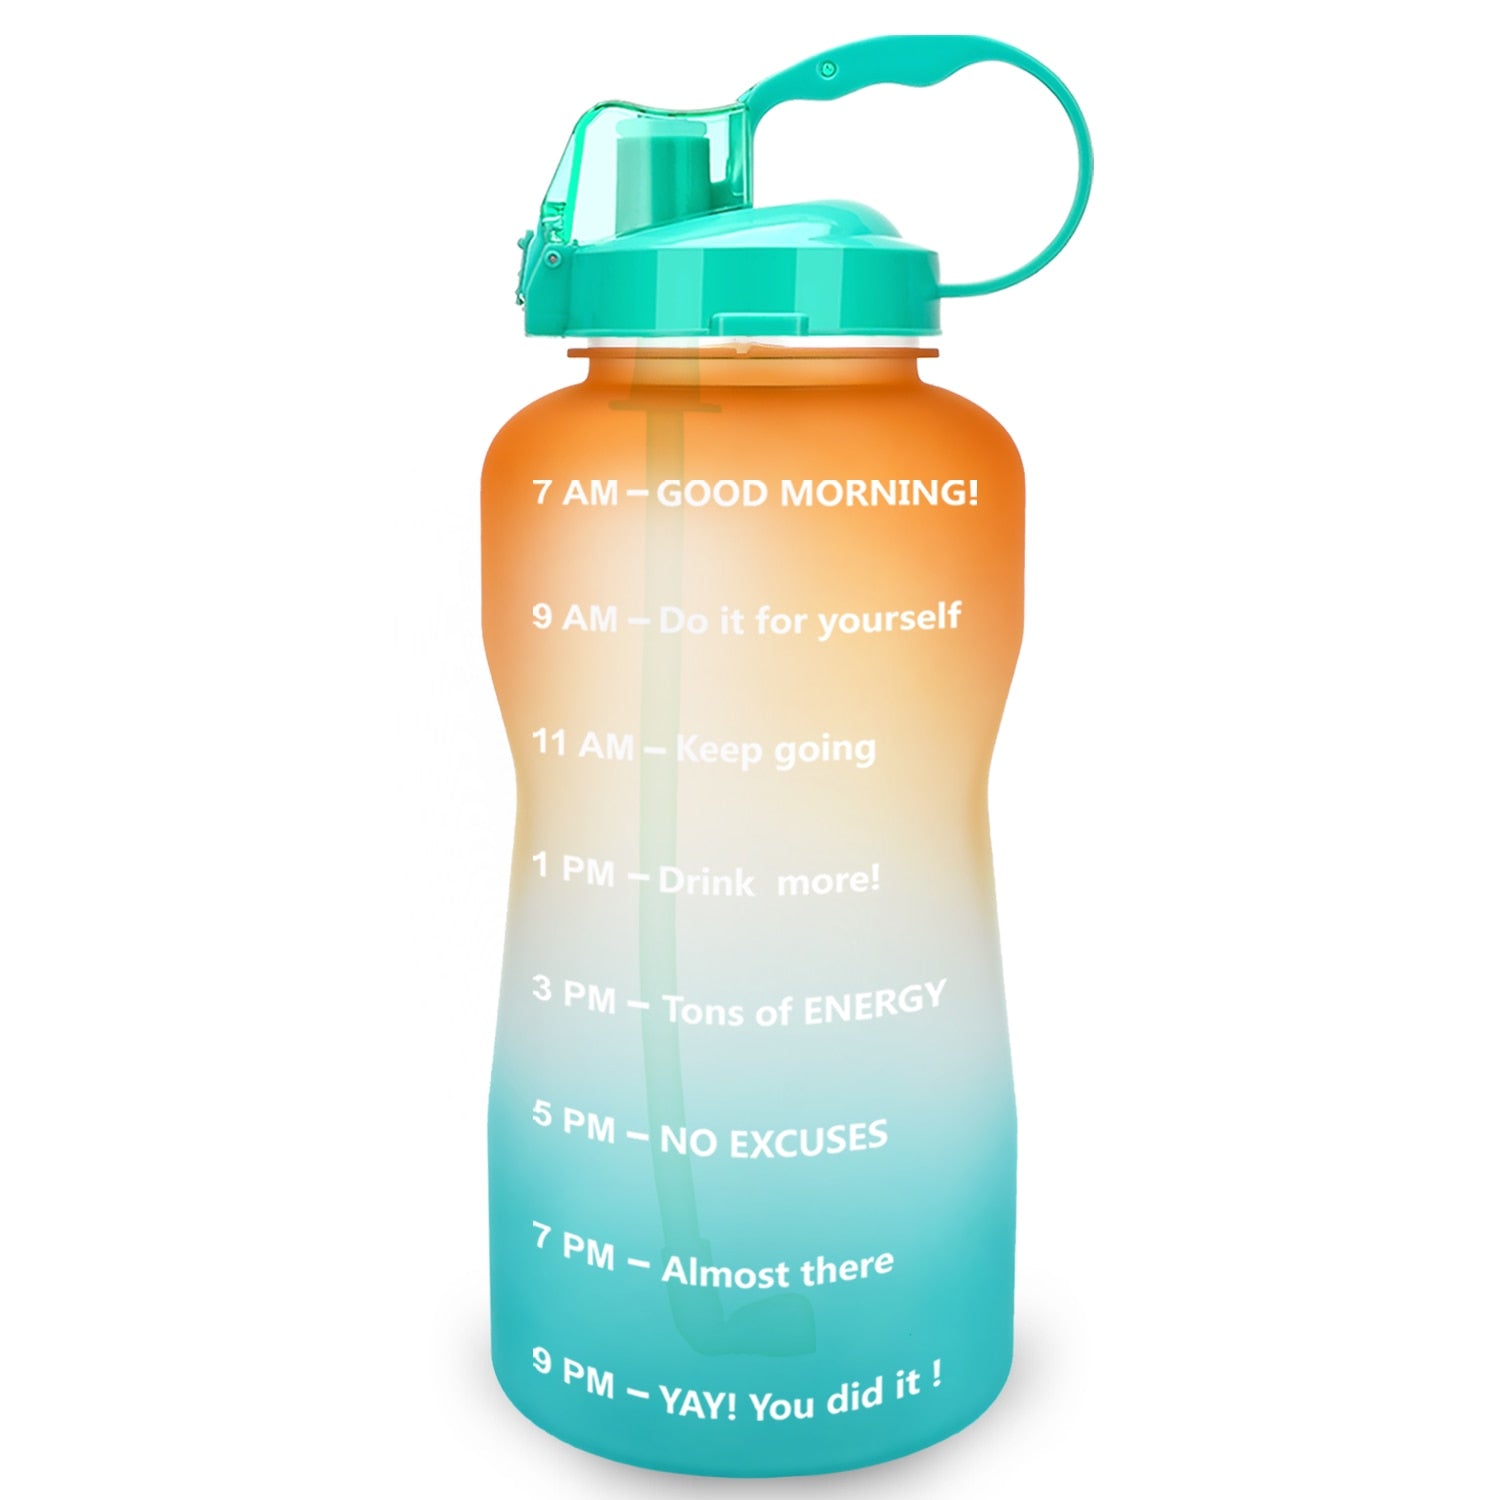 QuiFit Motivational Water Bottle